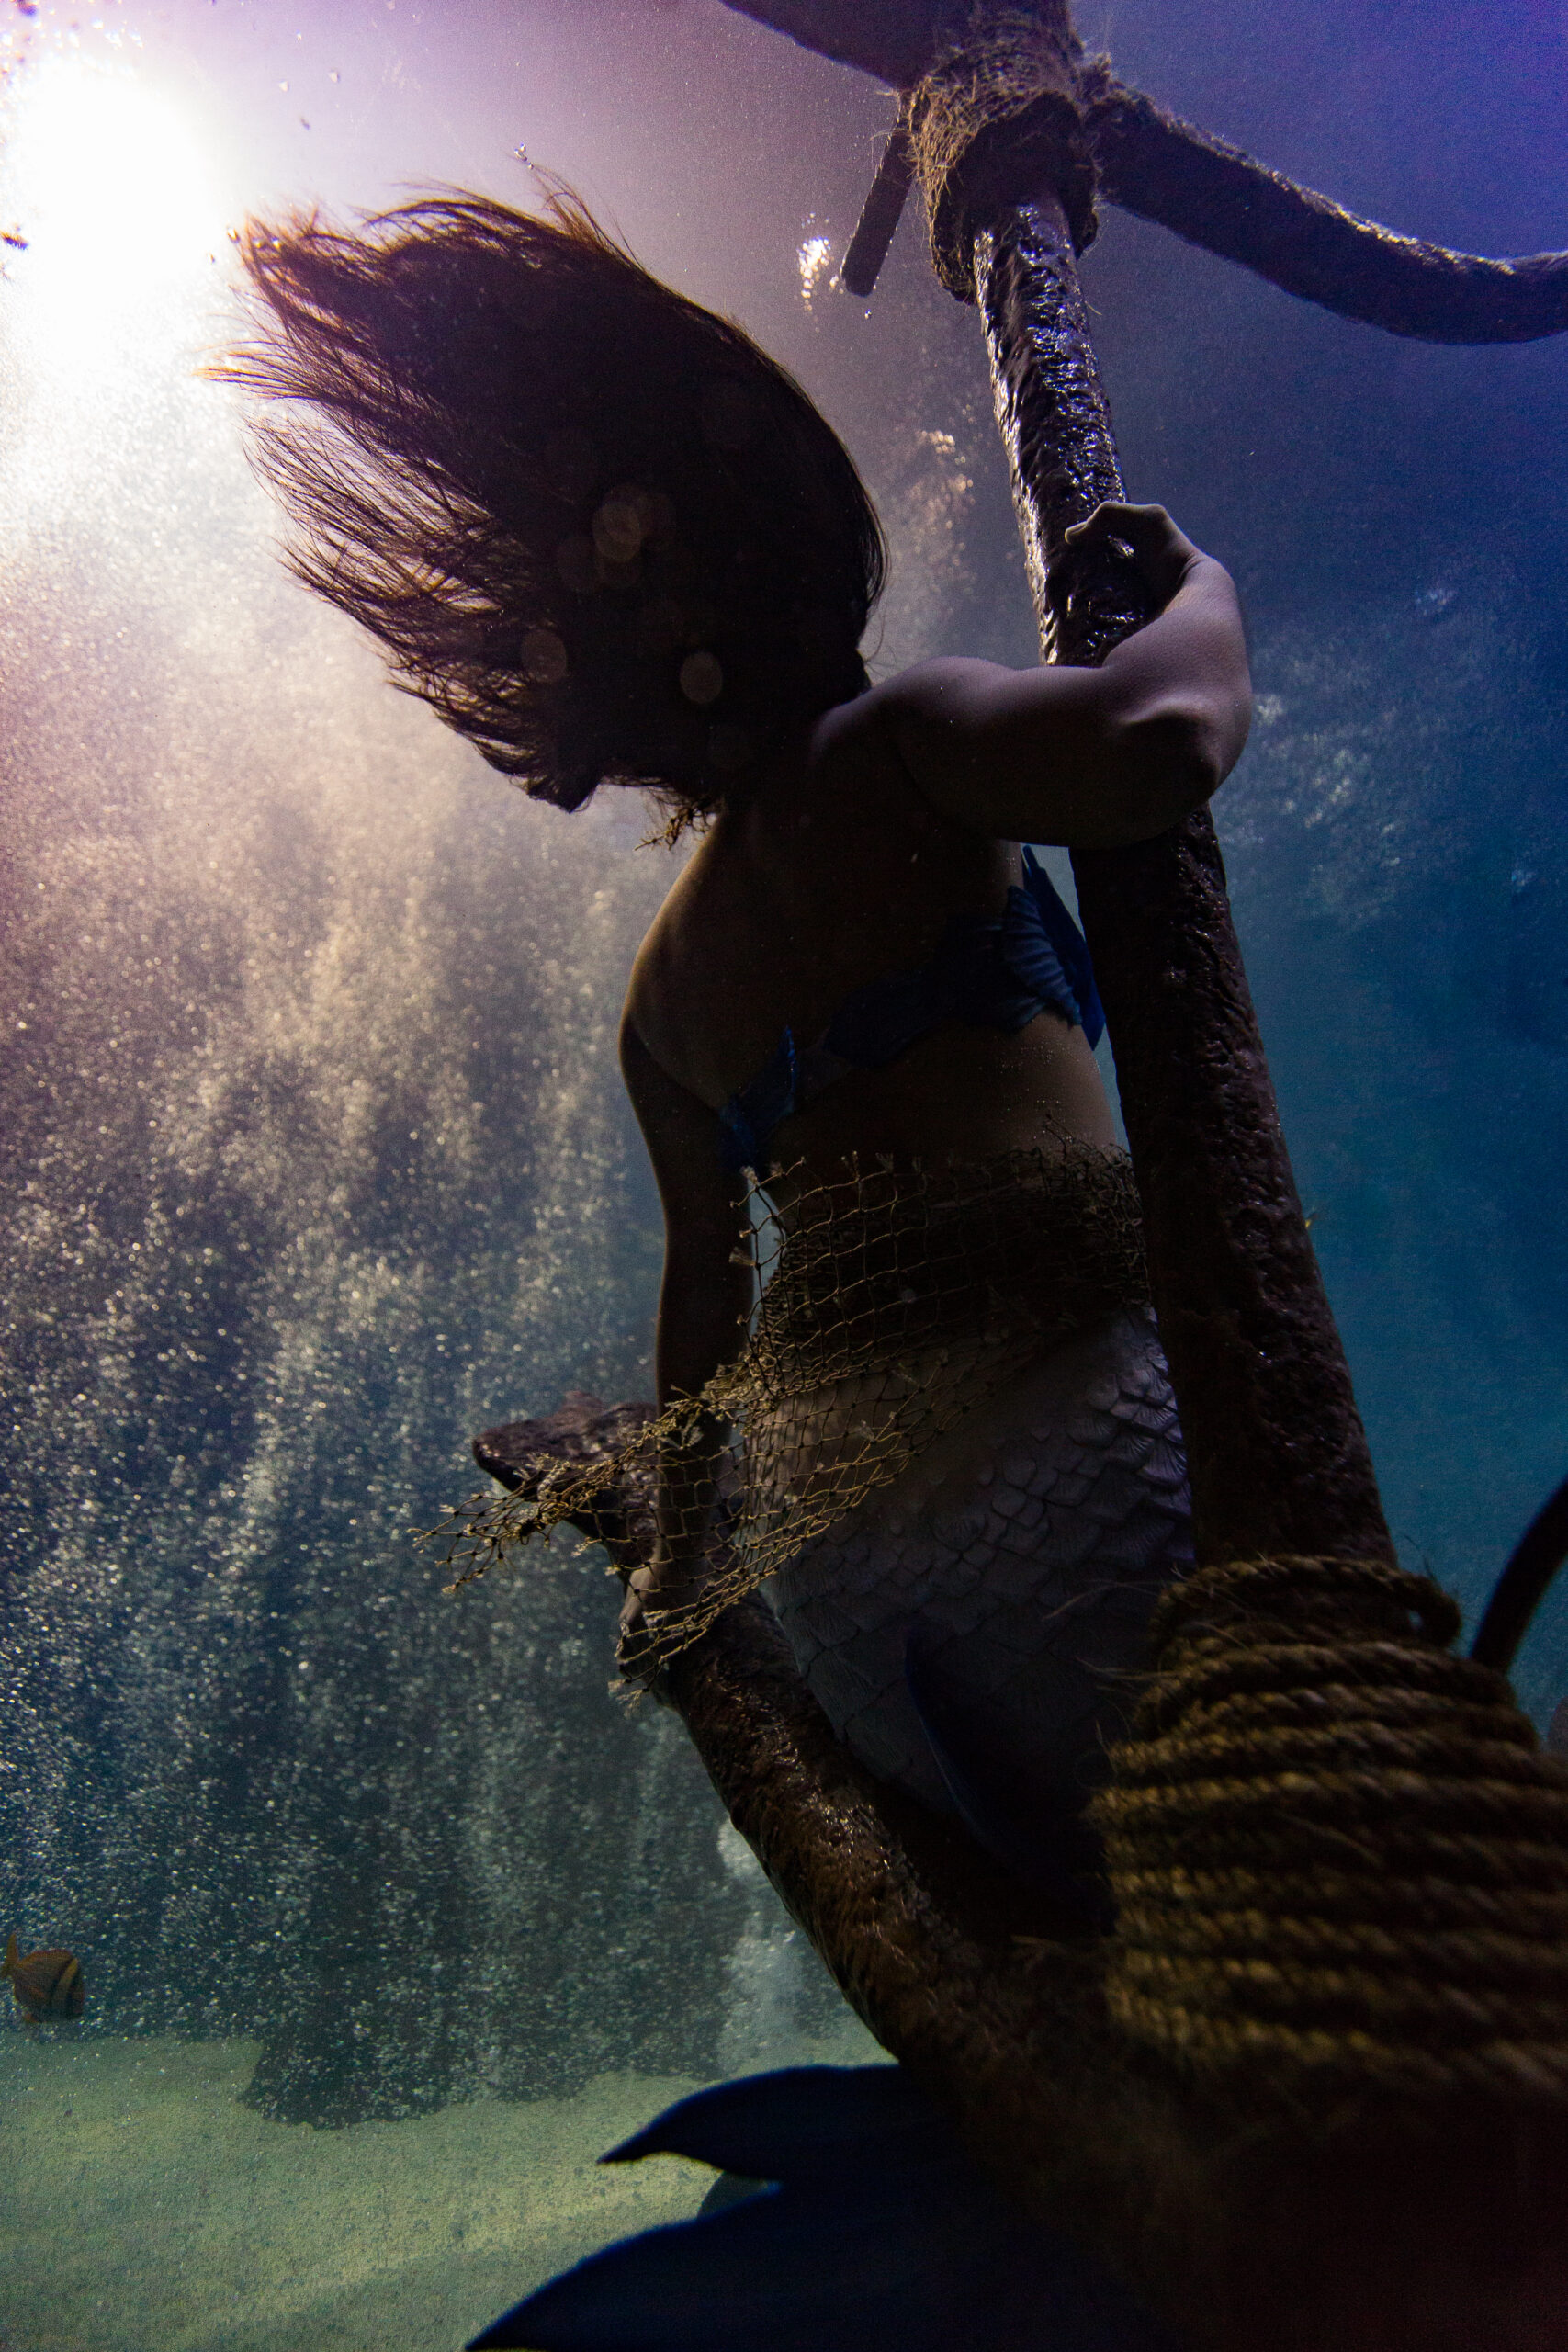 Adventure Aquarium hosts mermaids and invites visitors to an underwater